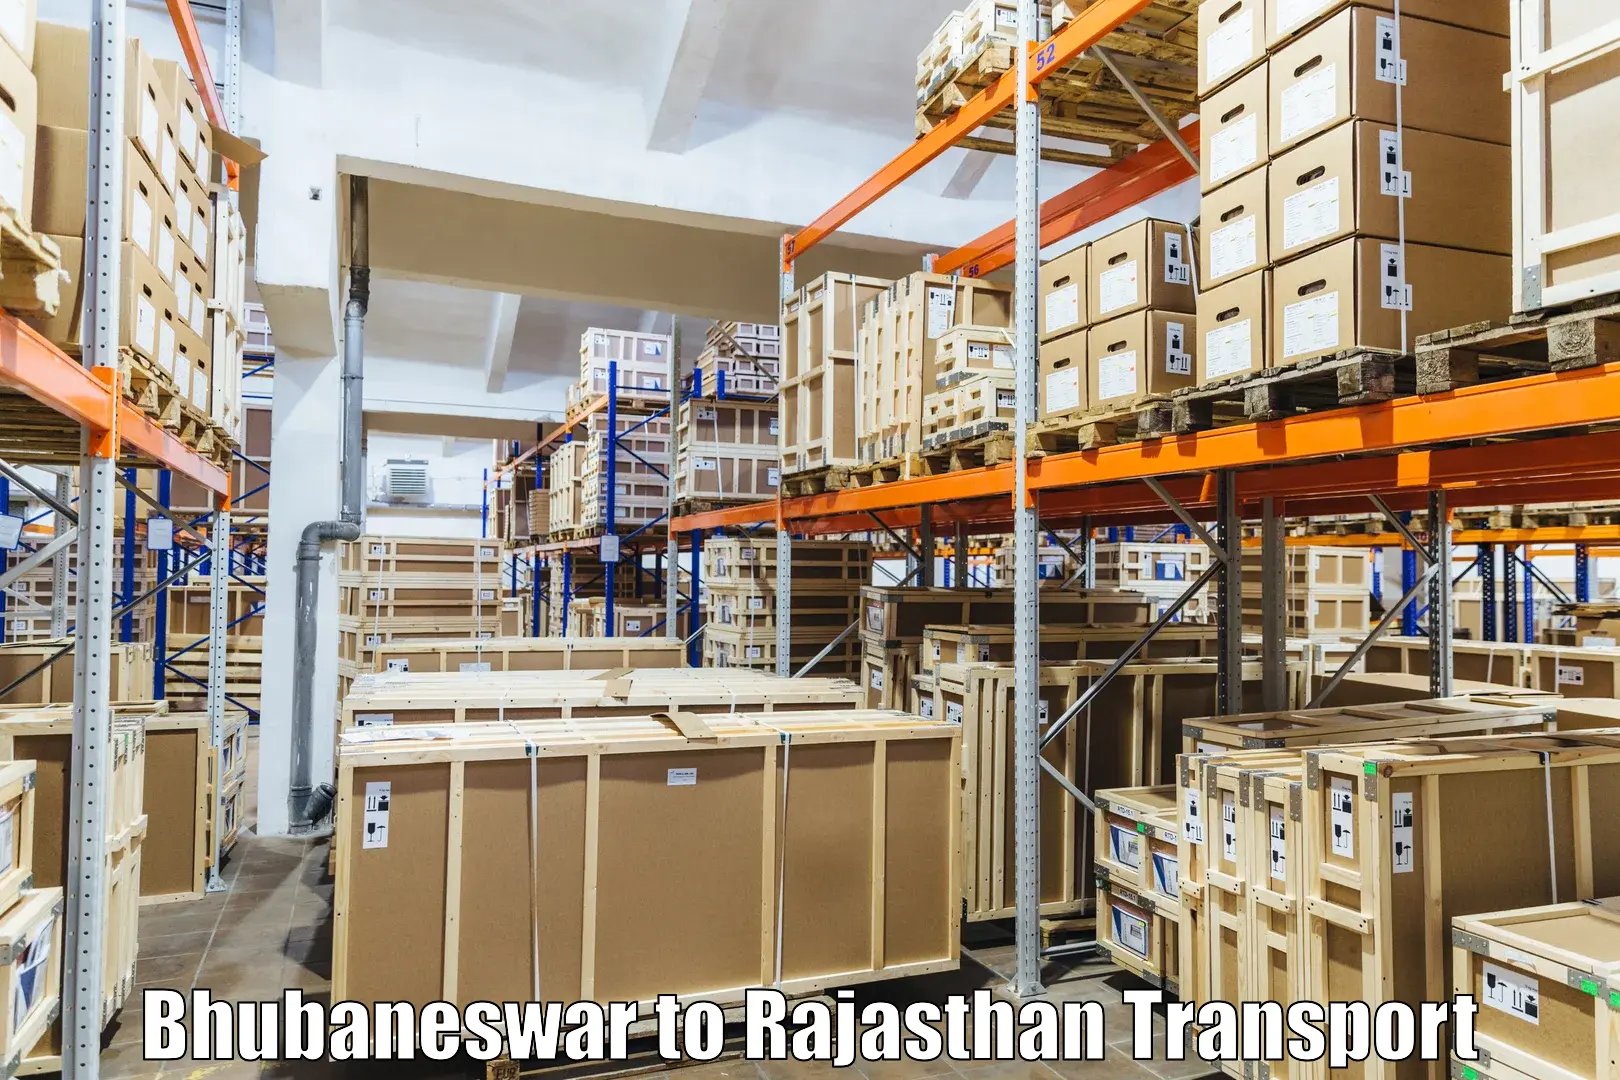 Online transport booking Bhubaneswar to Bhilwara